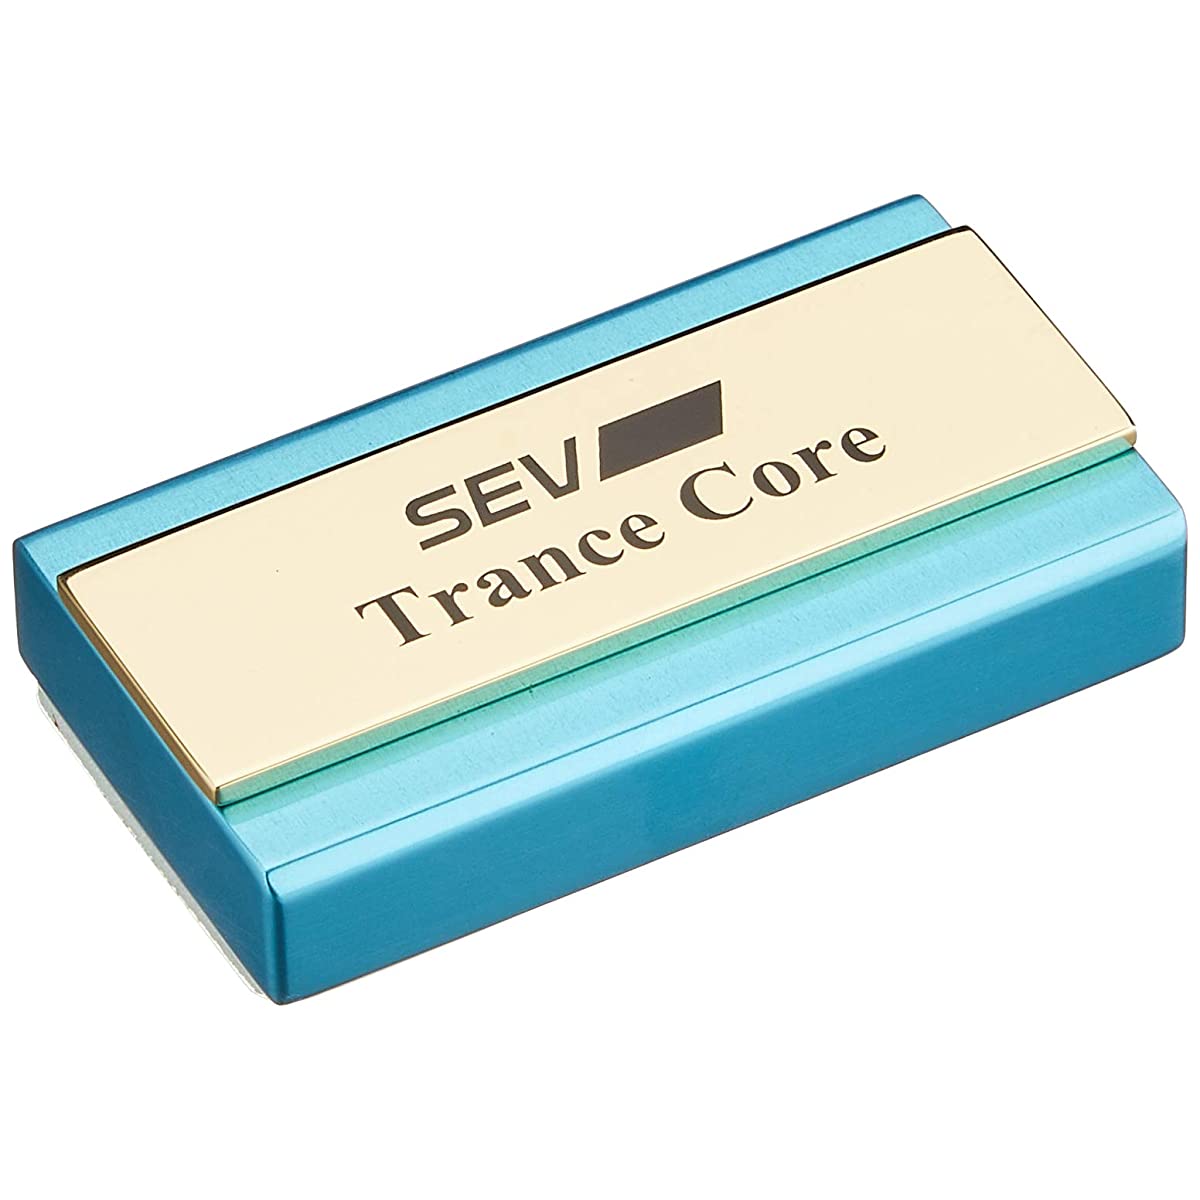 SEV Transcore 1 Piece Sev Trance Core